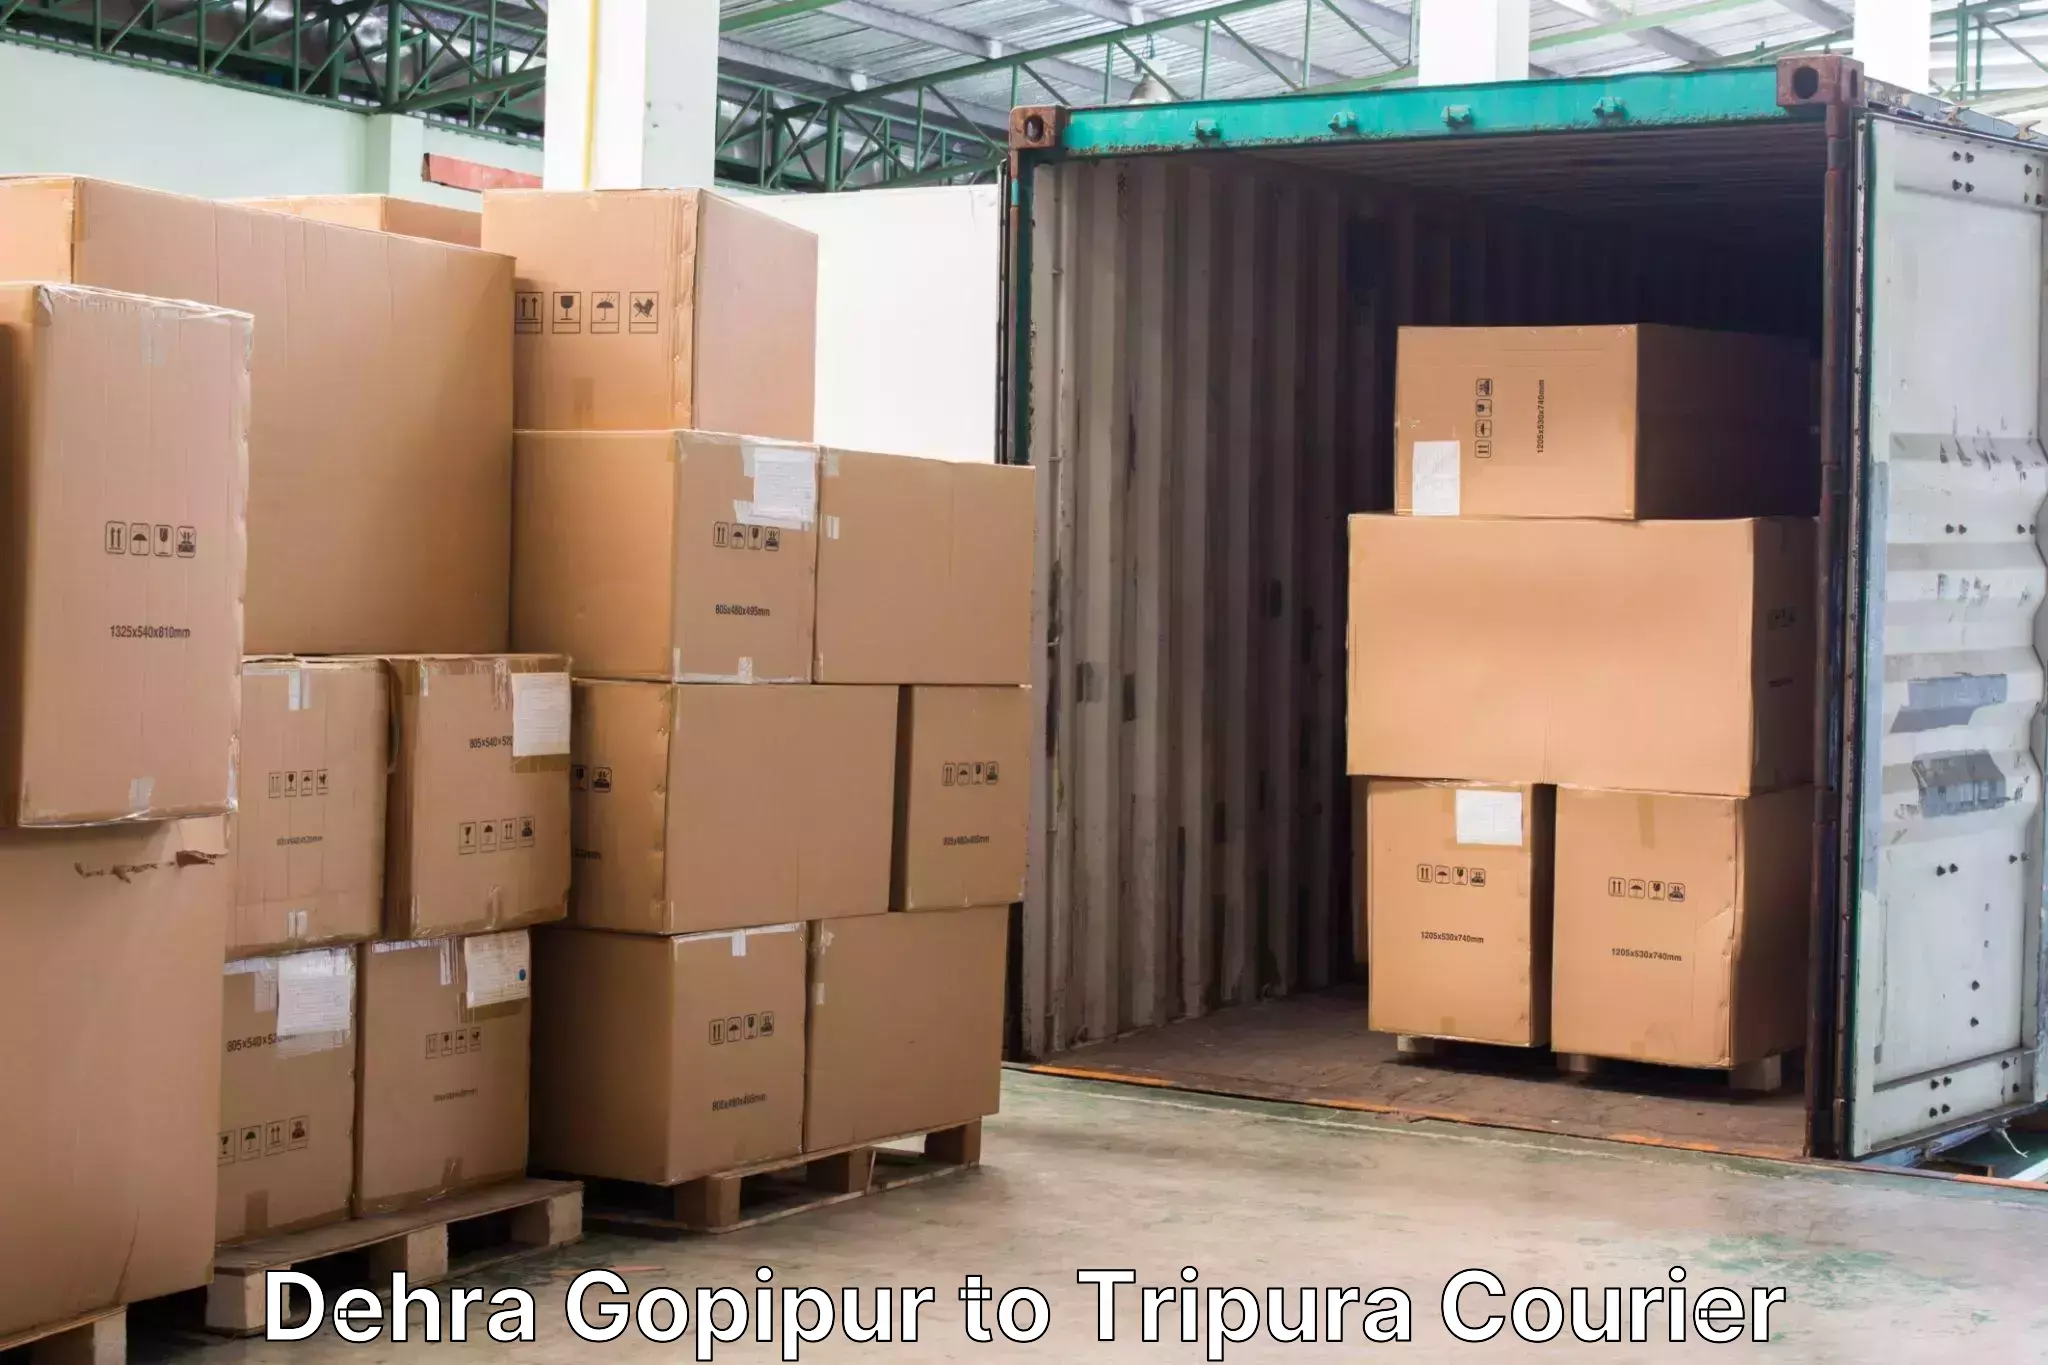 Luggage transit service Dehra Gopipur to Aambasa